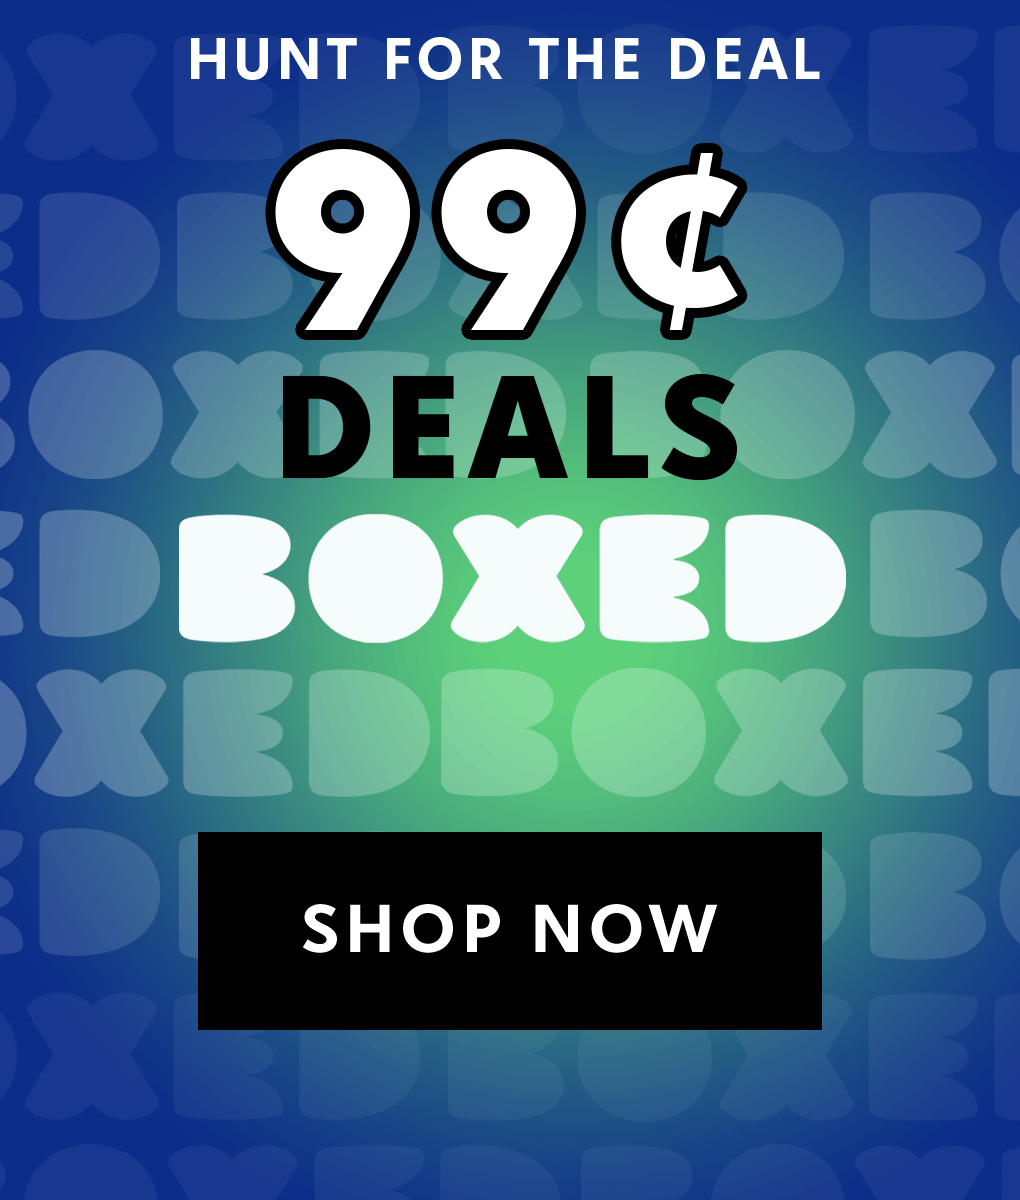 Boxed 99 cent Deals